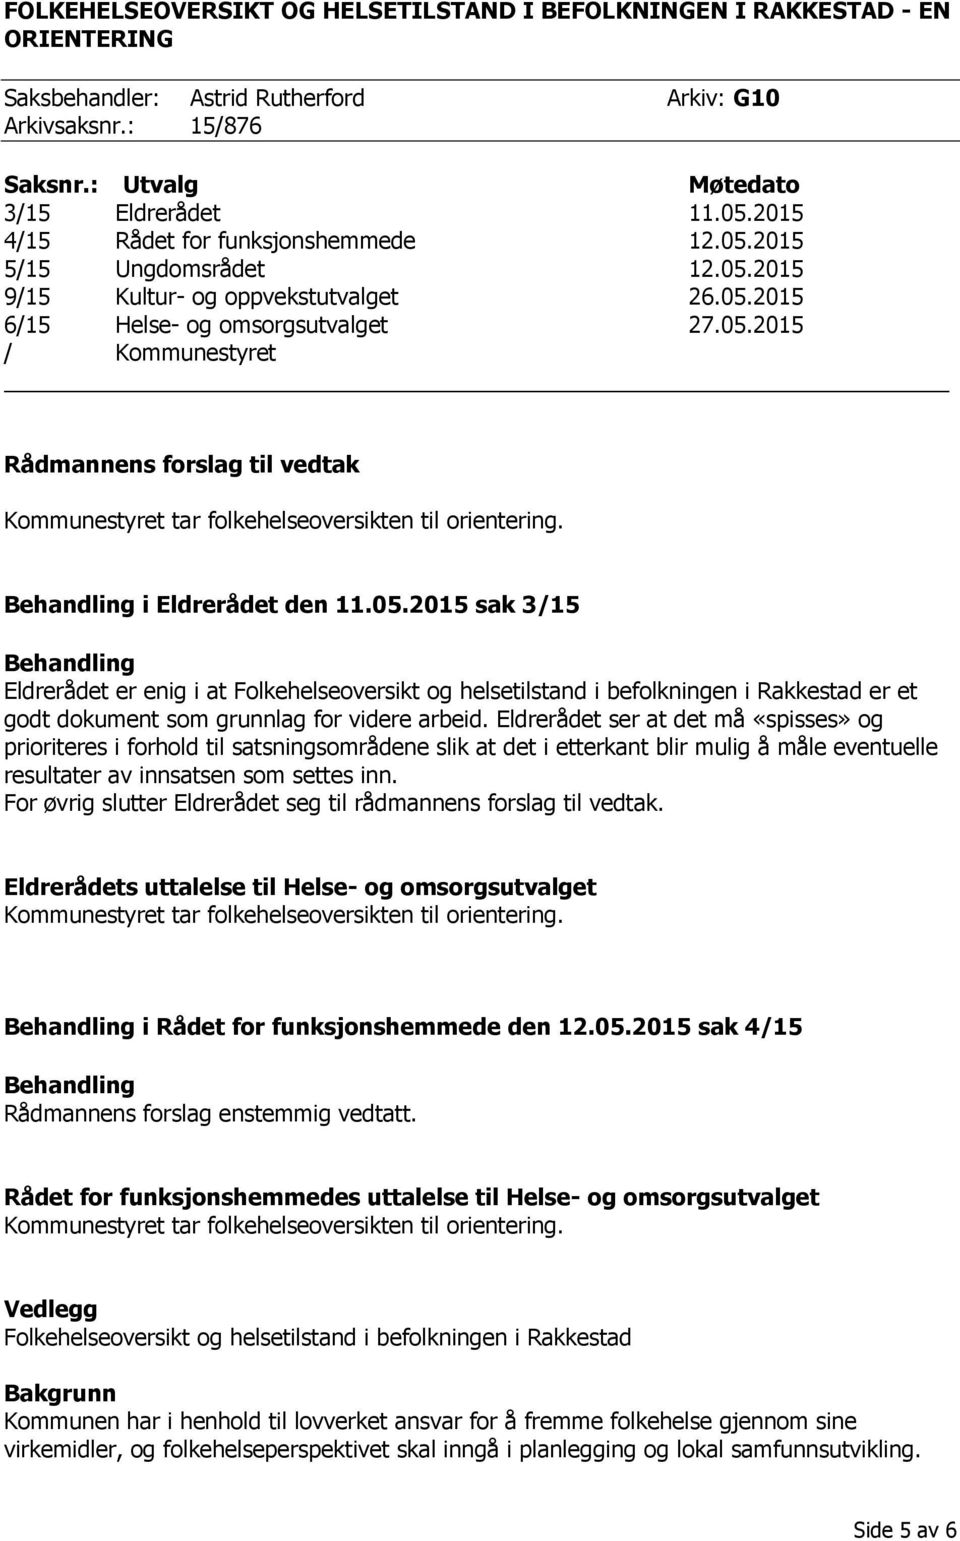 i Eldrerådet den 11.05.2015 sak 3/15 Eldrerådet er enig i at Folkehelseoversikt og helsetilstand i befolkningen i Rakkestad er et godt dokument som grunnlag for videre arbeid.